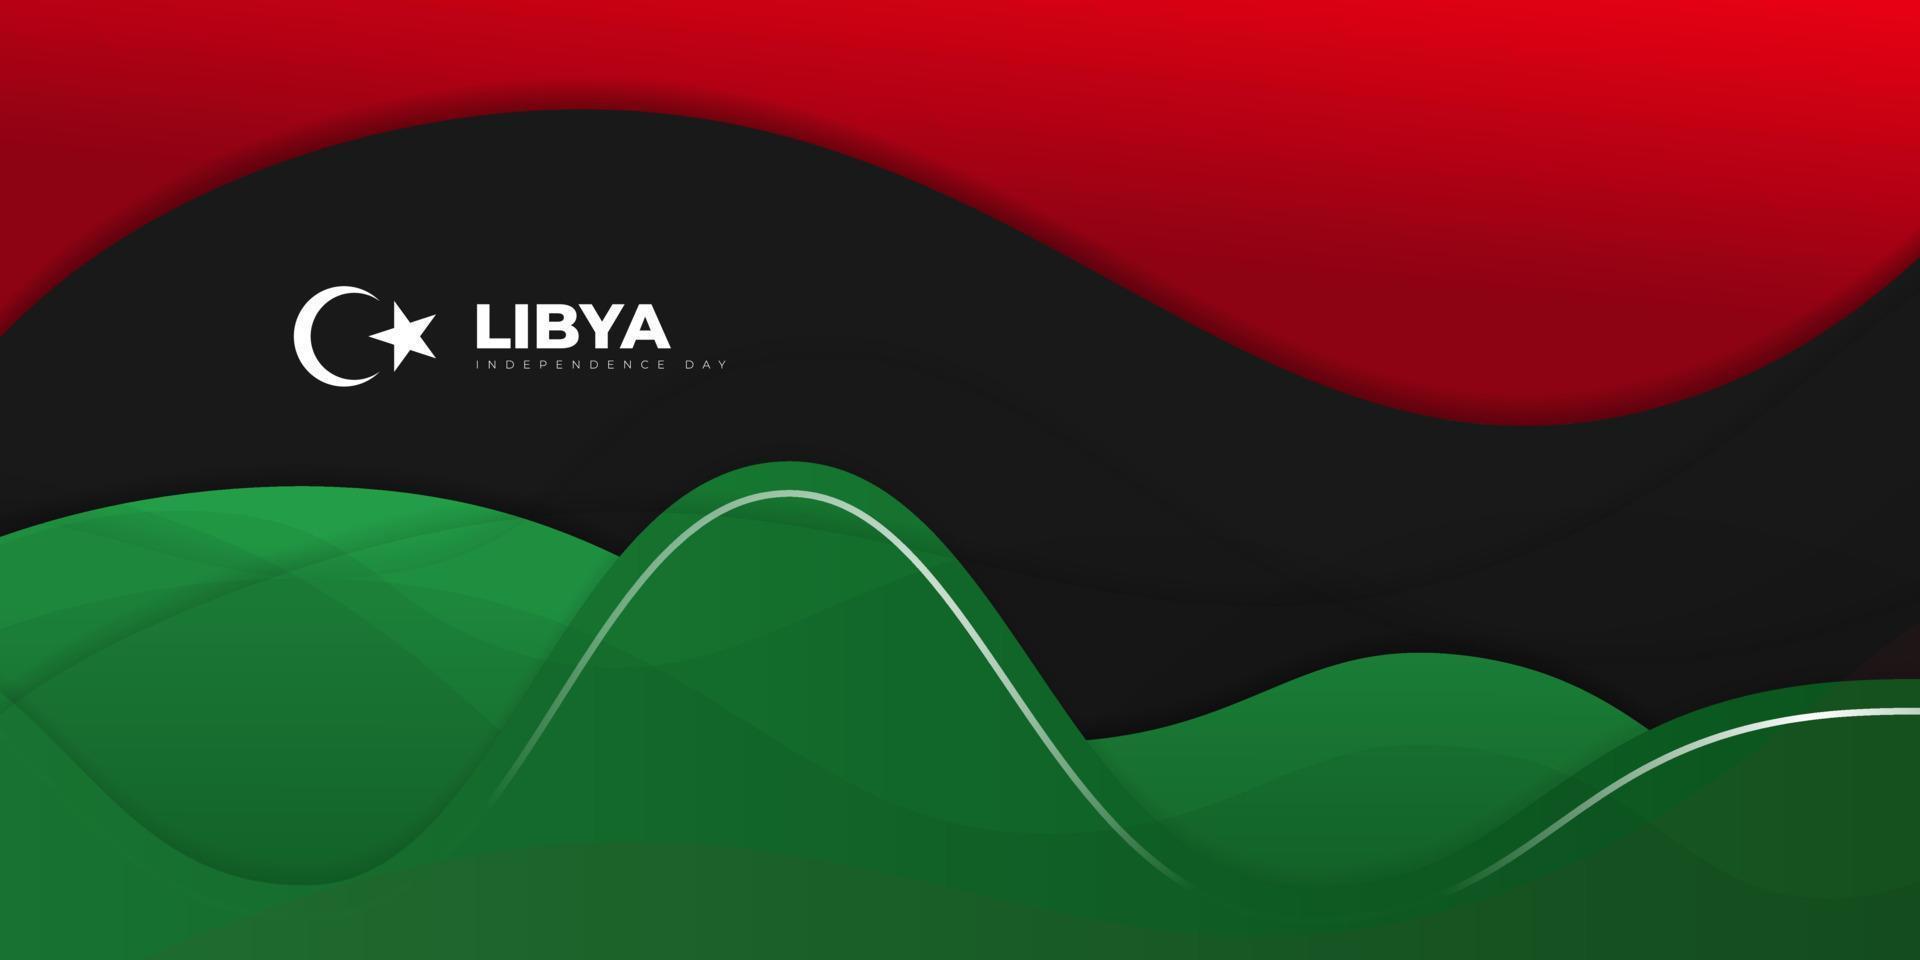 conception de fond rouge, noir et vert ondulé. conception de modèle de fête de l'indépendance de la libye. vecteur